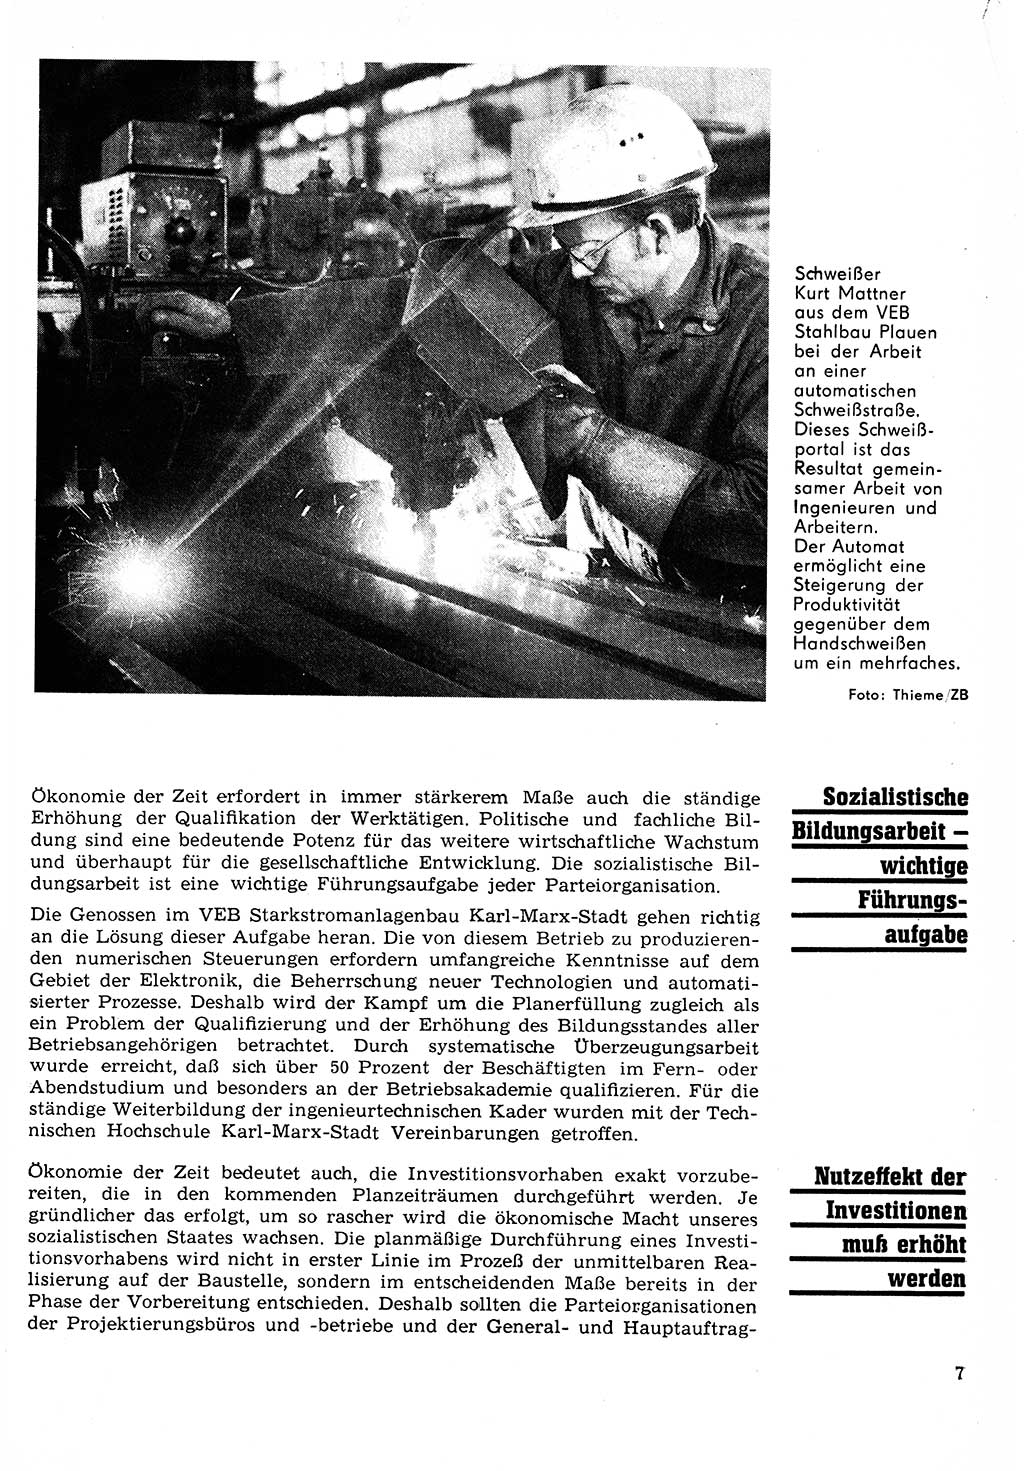 Neuer Weg (NW), Organ des Zentralkomitees (ZK) der SED (Sozialistische Einheitspartei Deutschlands) für Fragen des Parteilebens, 24. Jahrgang [Deutsche Demokratische Republik (DDR)] 1969, Seite 7 (NW ZK SED DDR 1969, S. 7)